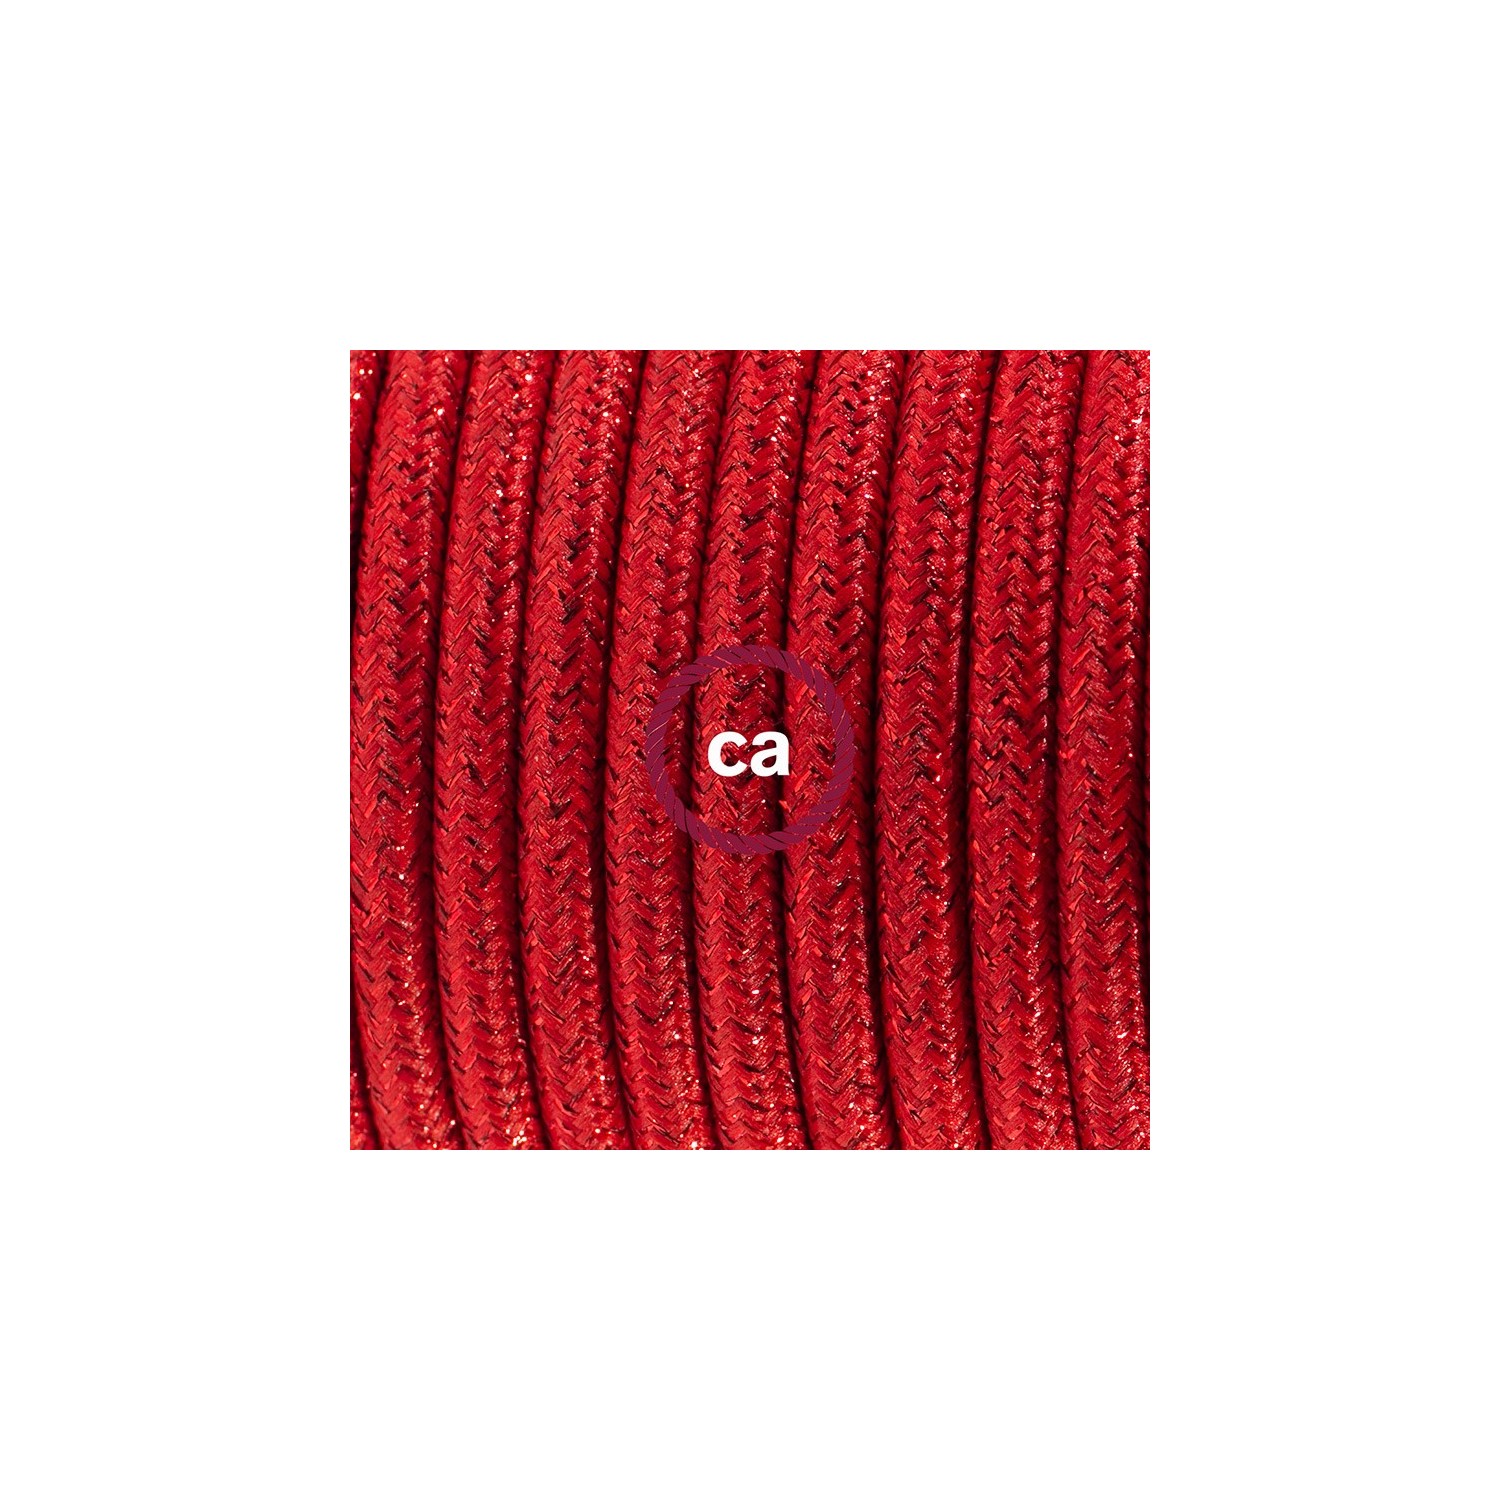 Cableado para lámpara de mesa, cable RL09 Rayón Brillante Rojo 1,8 m. Elige el color de la clavija y del interruptor!